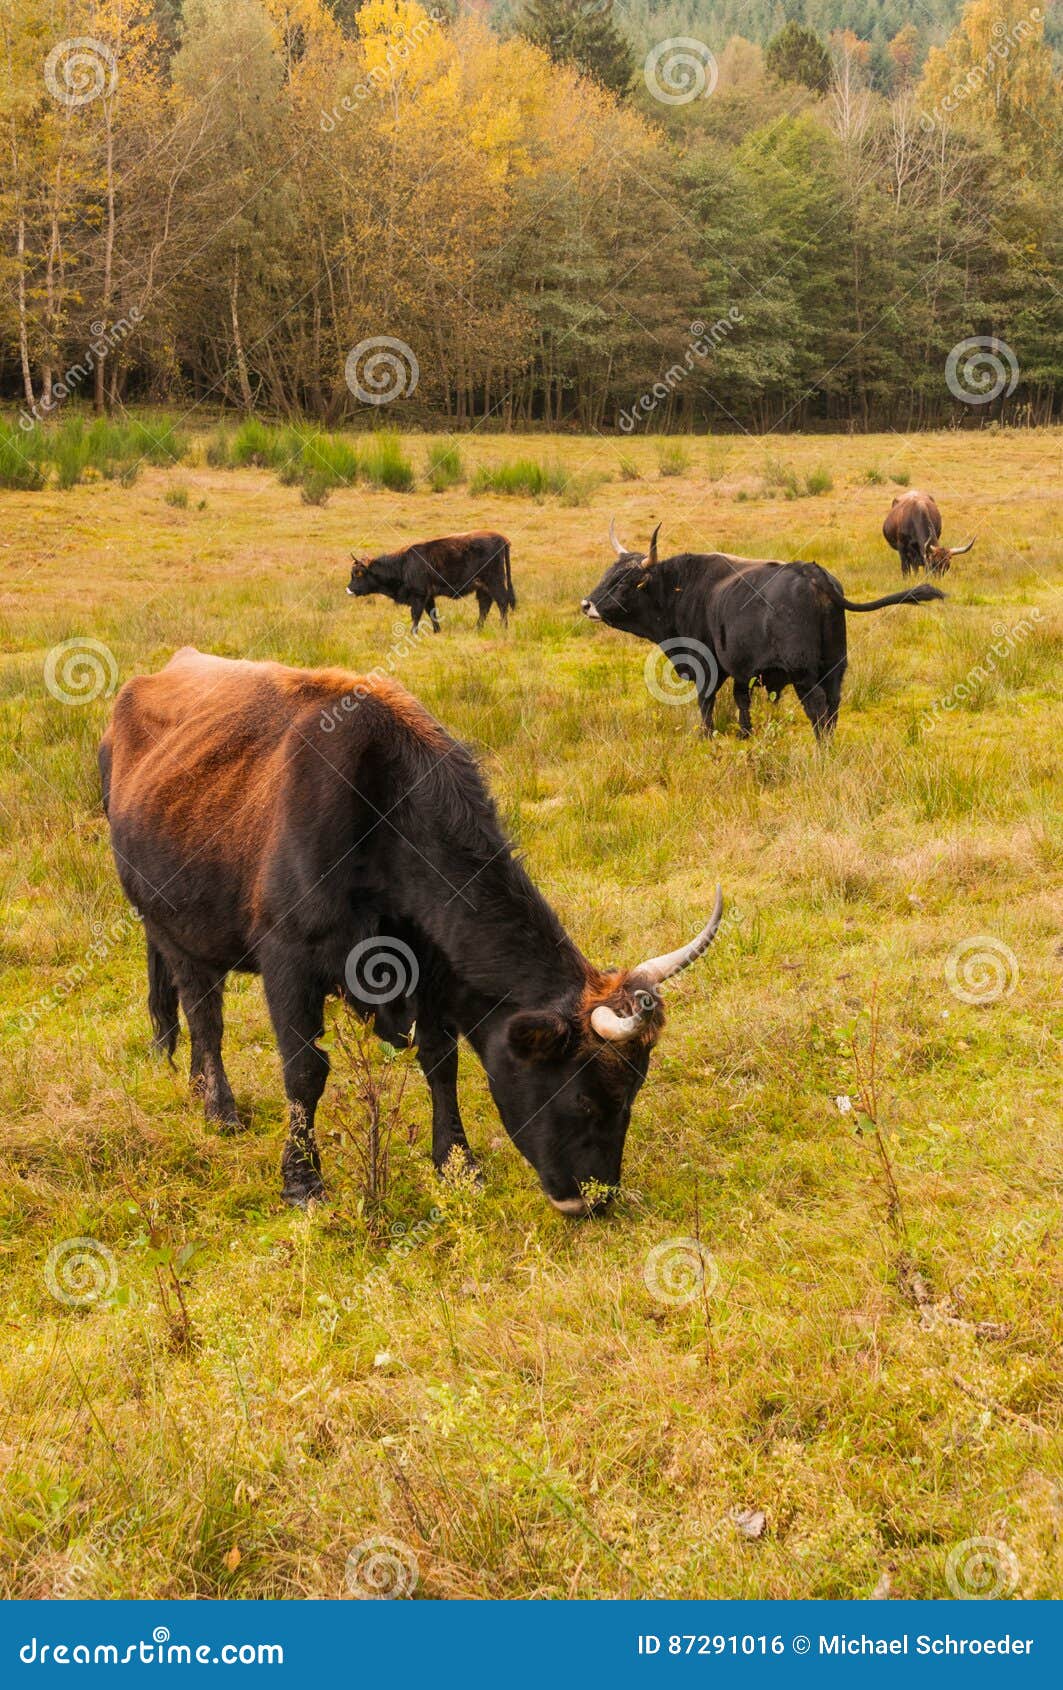 aurochs on grazing land